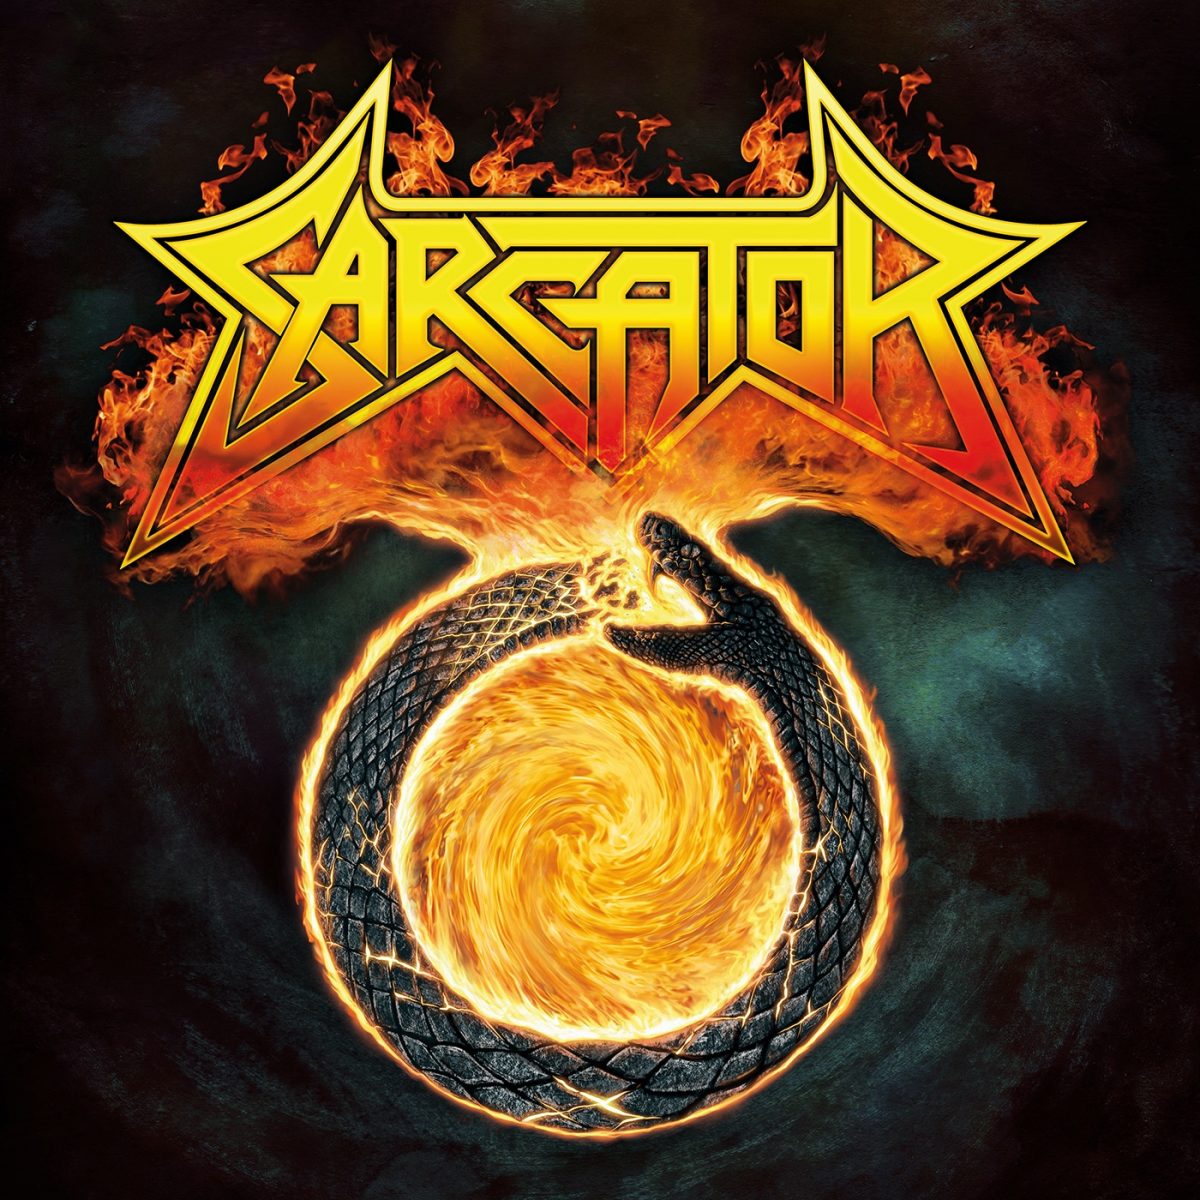 sarcator-album-cover